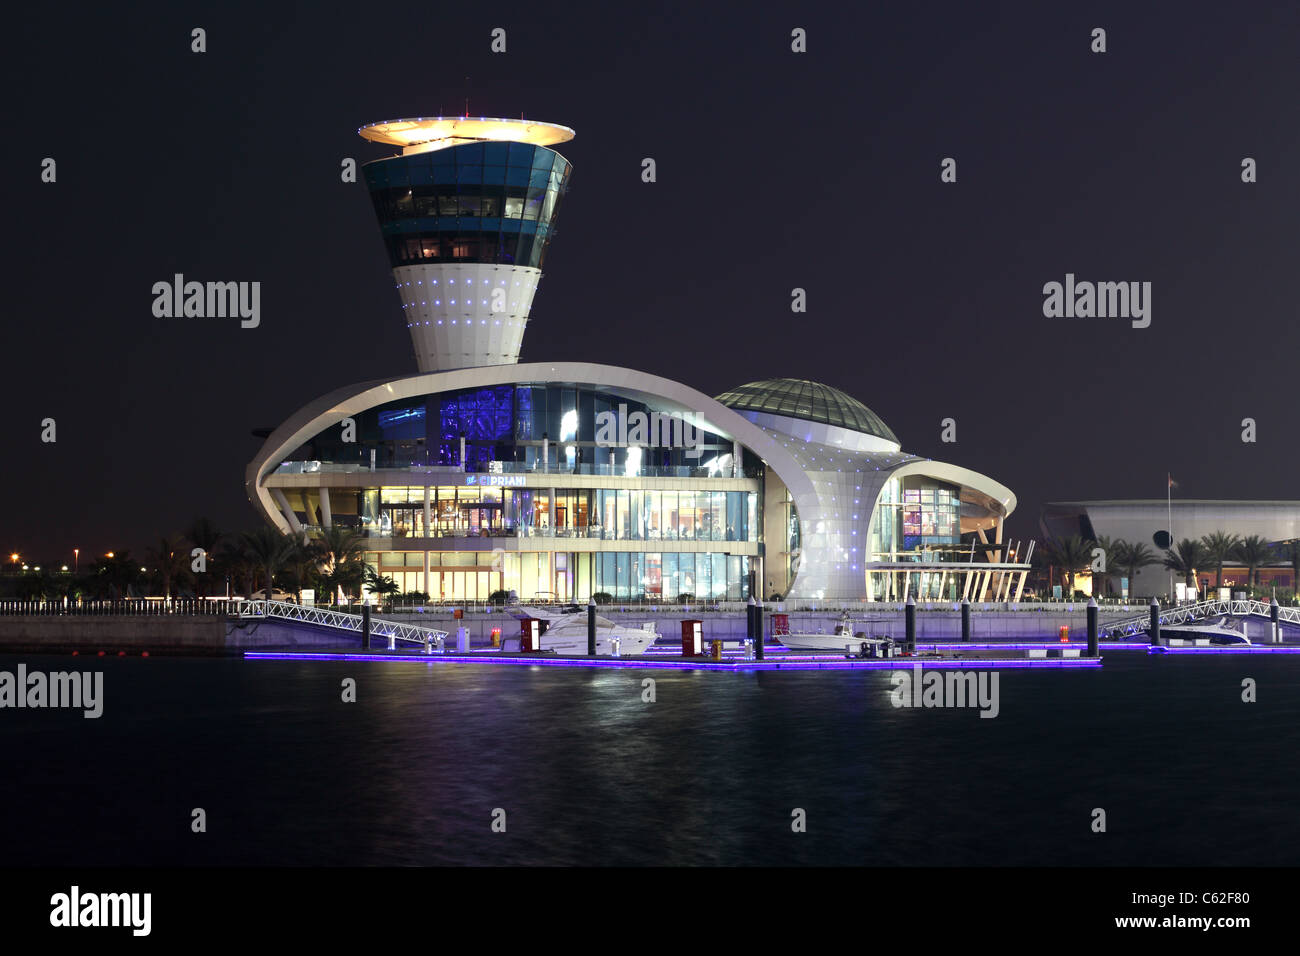 Yas Marina beleuchtet in der Nacht, Abu Dhabi Vereinigte Arabische Emirate. Stockfoto